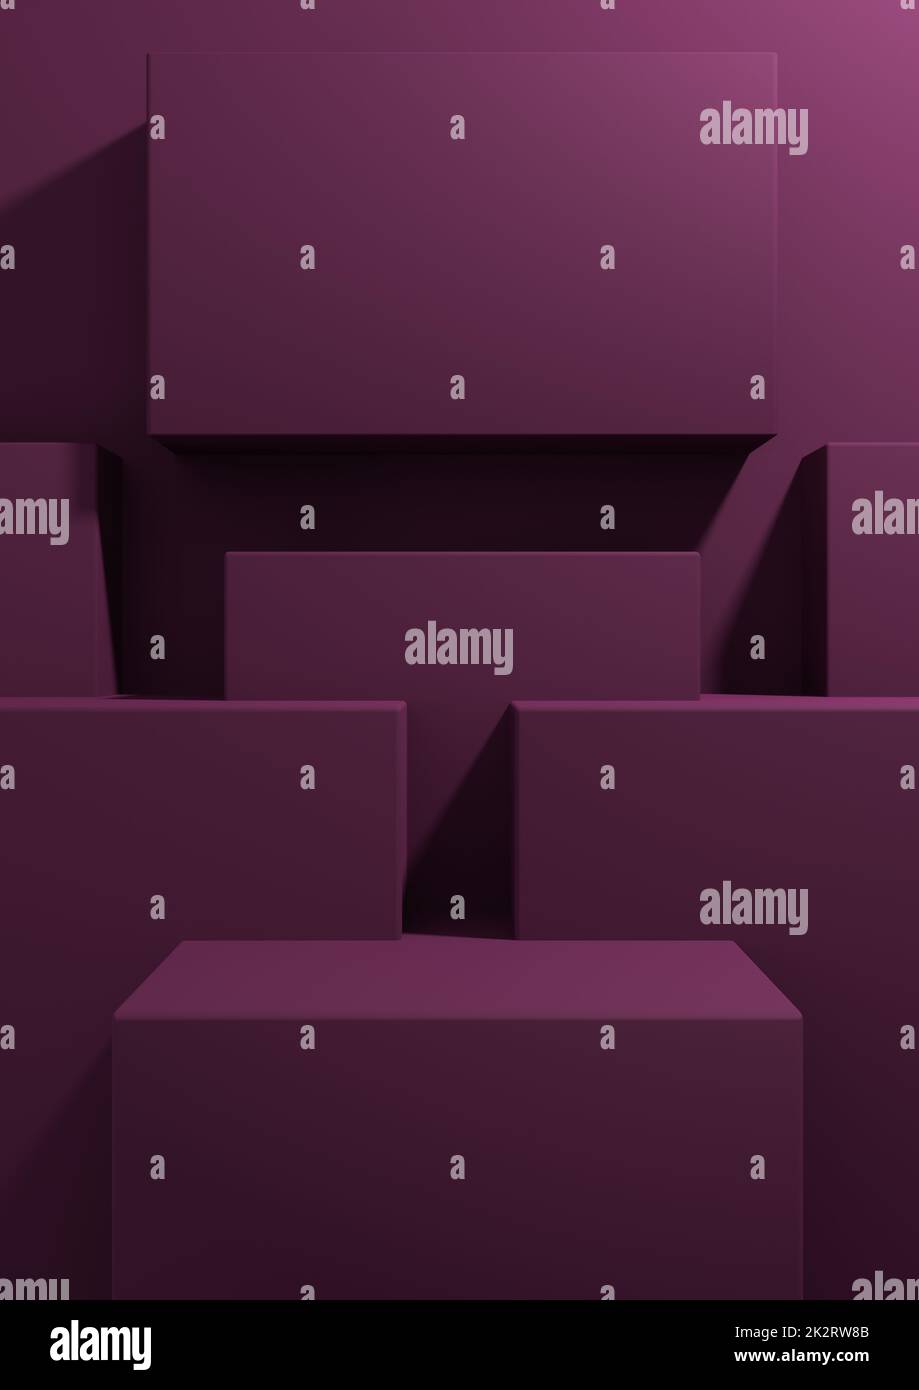 Magenta foncé, violet 3D rendu produit affichage fond d'écran simple, minimal, géométrique avec support podium pour la photographie de produit ou modèle de présentation publicitaire Banque D'Images